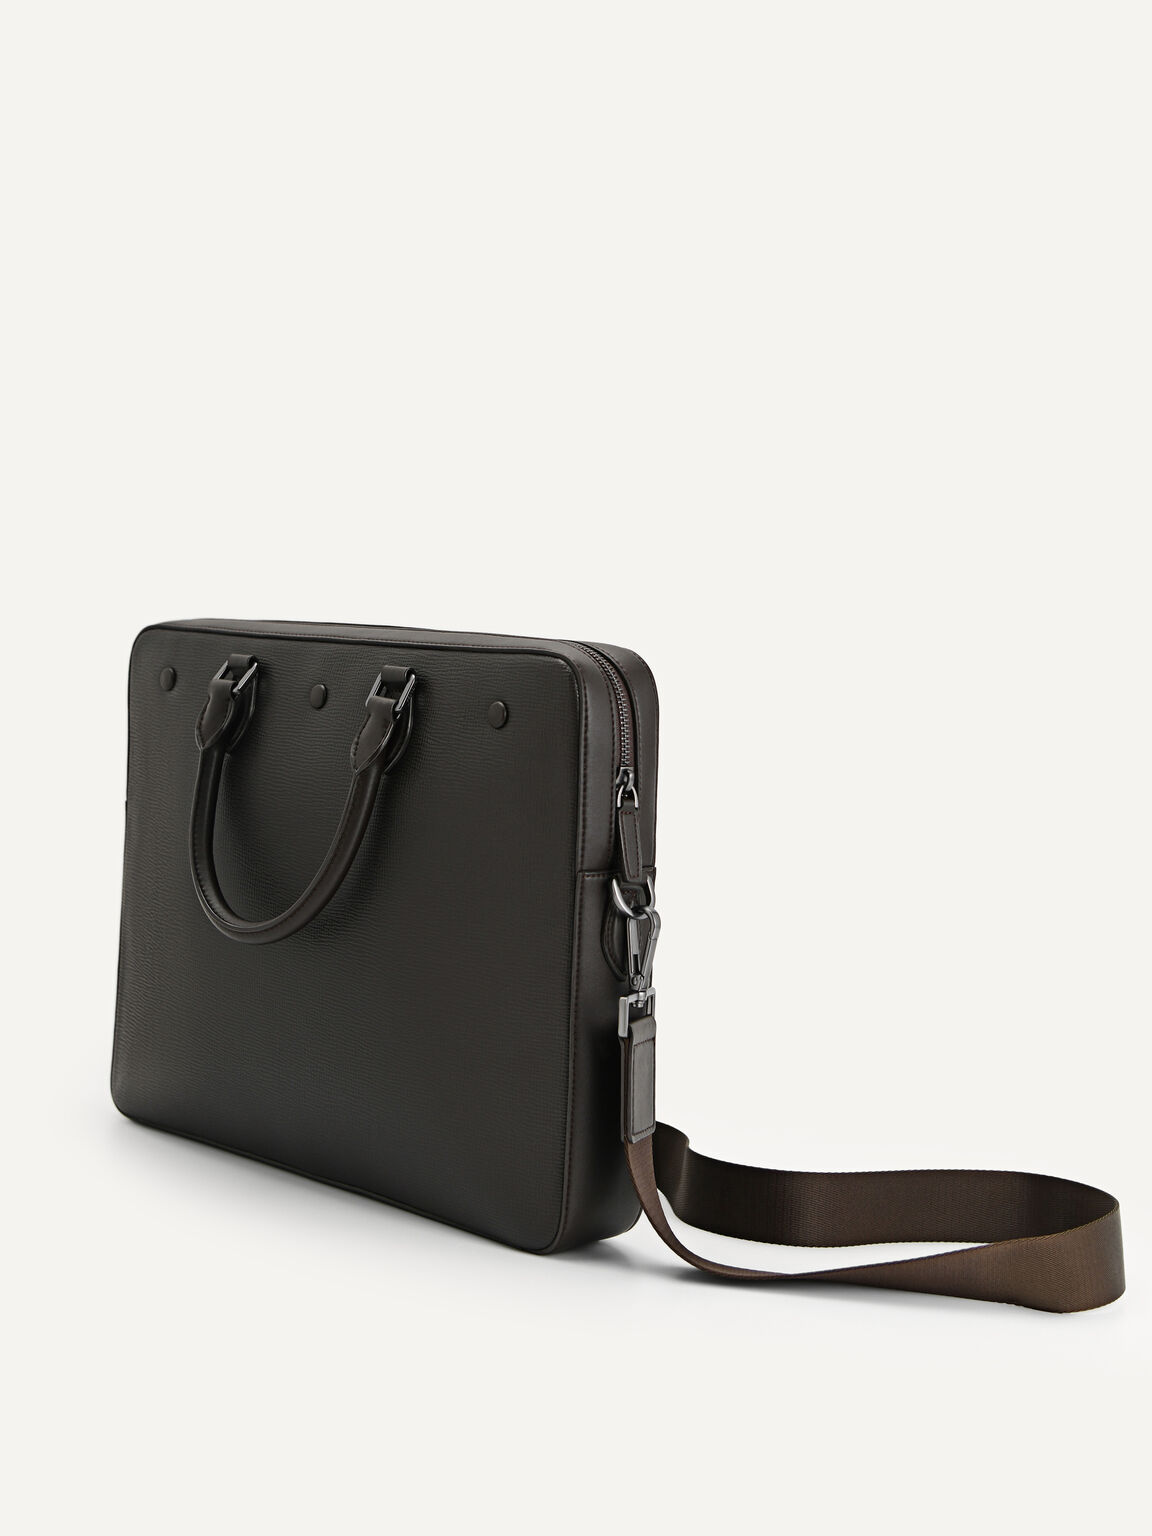 Textured Leather Briefcase, Dark Brown, hi-res